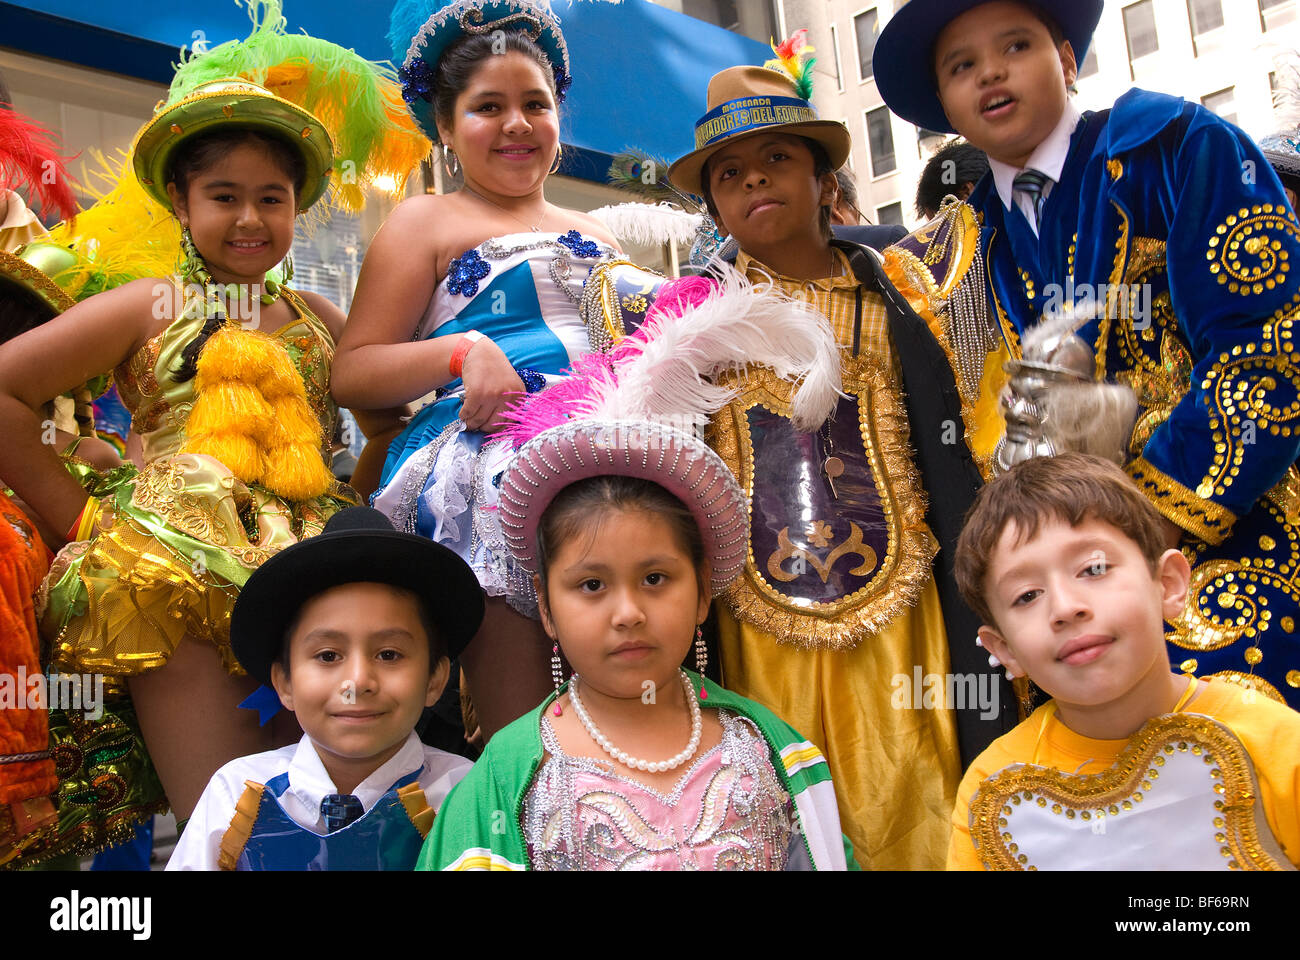 Bolivianischen Trachten, jährliche Hispanic Tagesparade auf 5th Avenue, New York City, das Hispanic Erbe Stockfoto